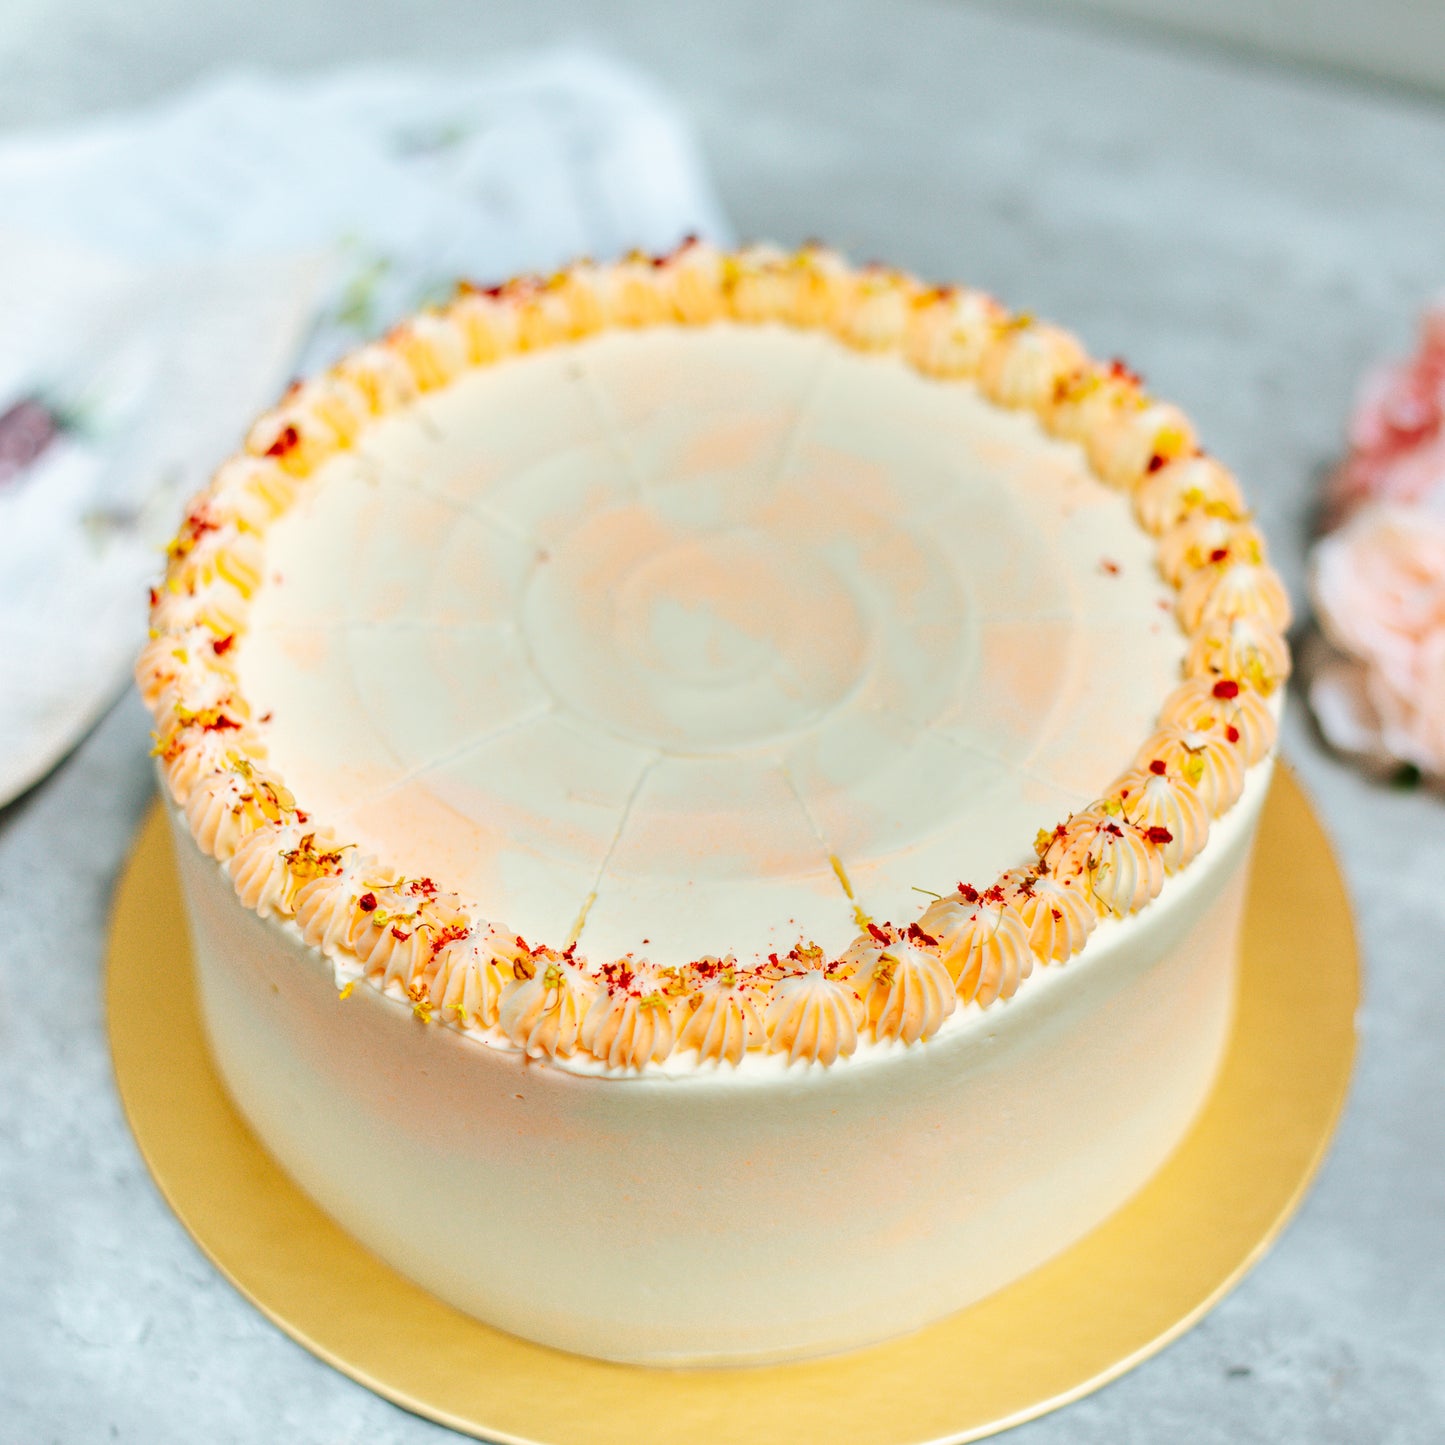 Yuzu Osmanthus Cake